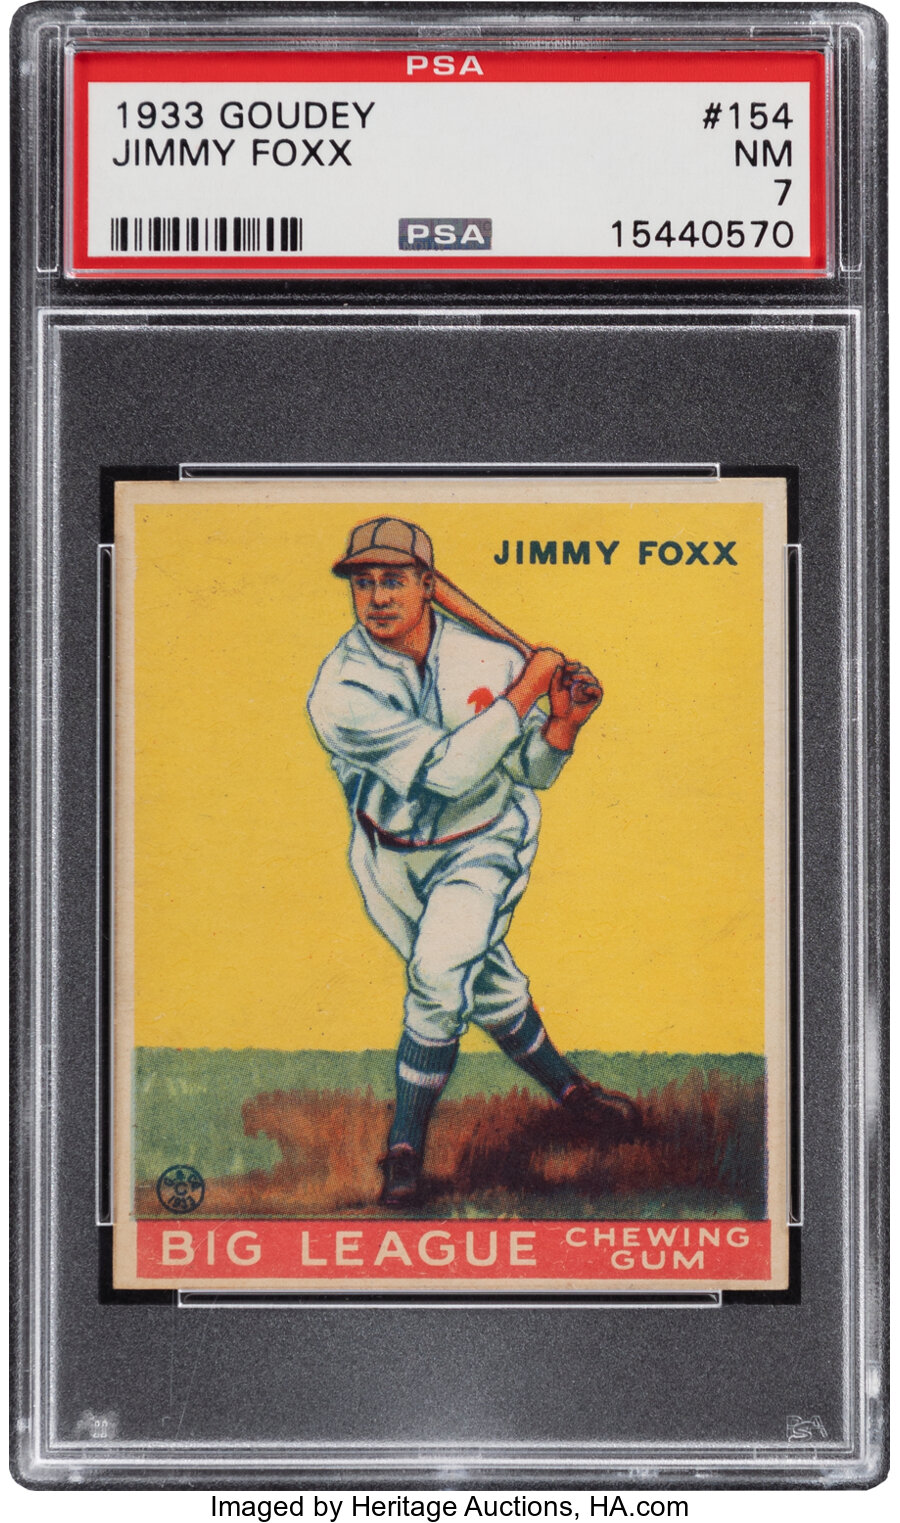 1933 Goudey Jimmy Foxx #154 PSA NM 7